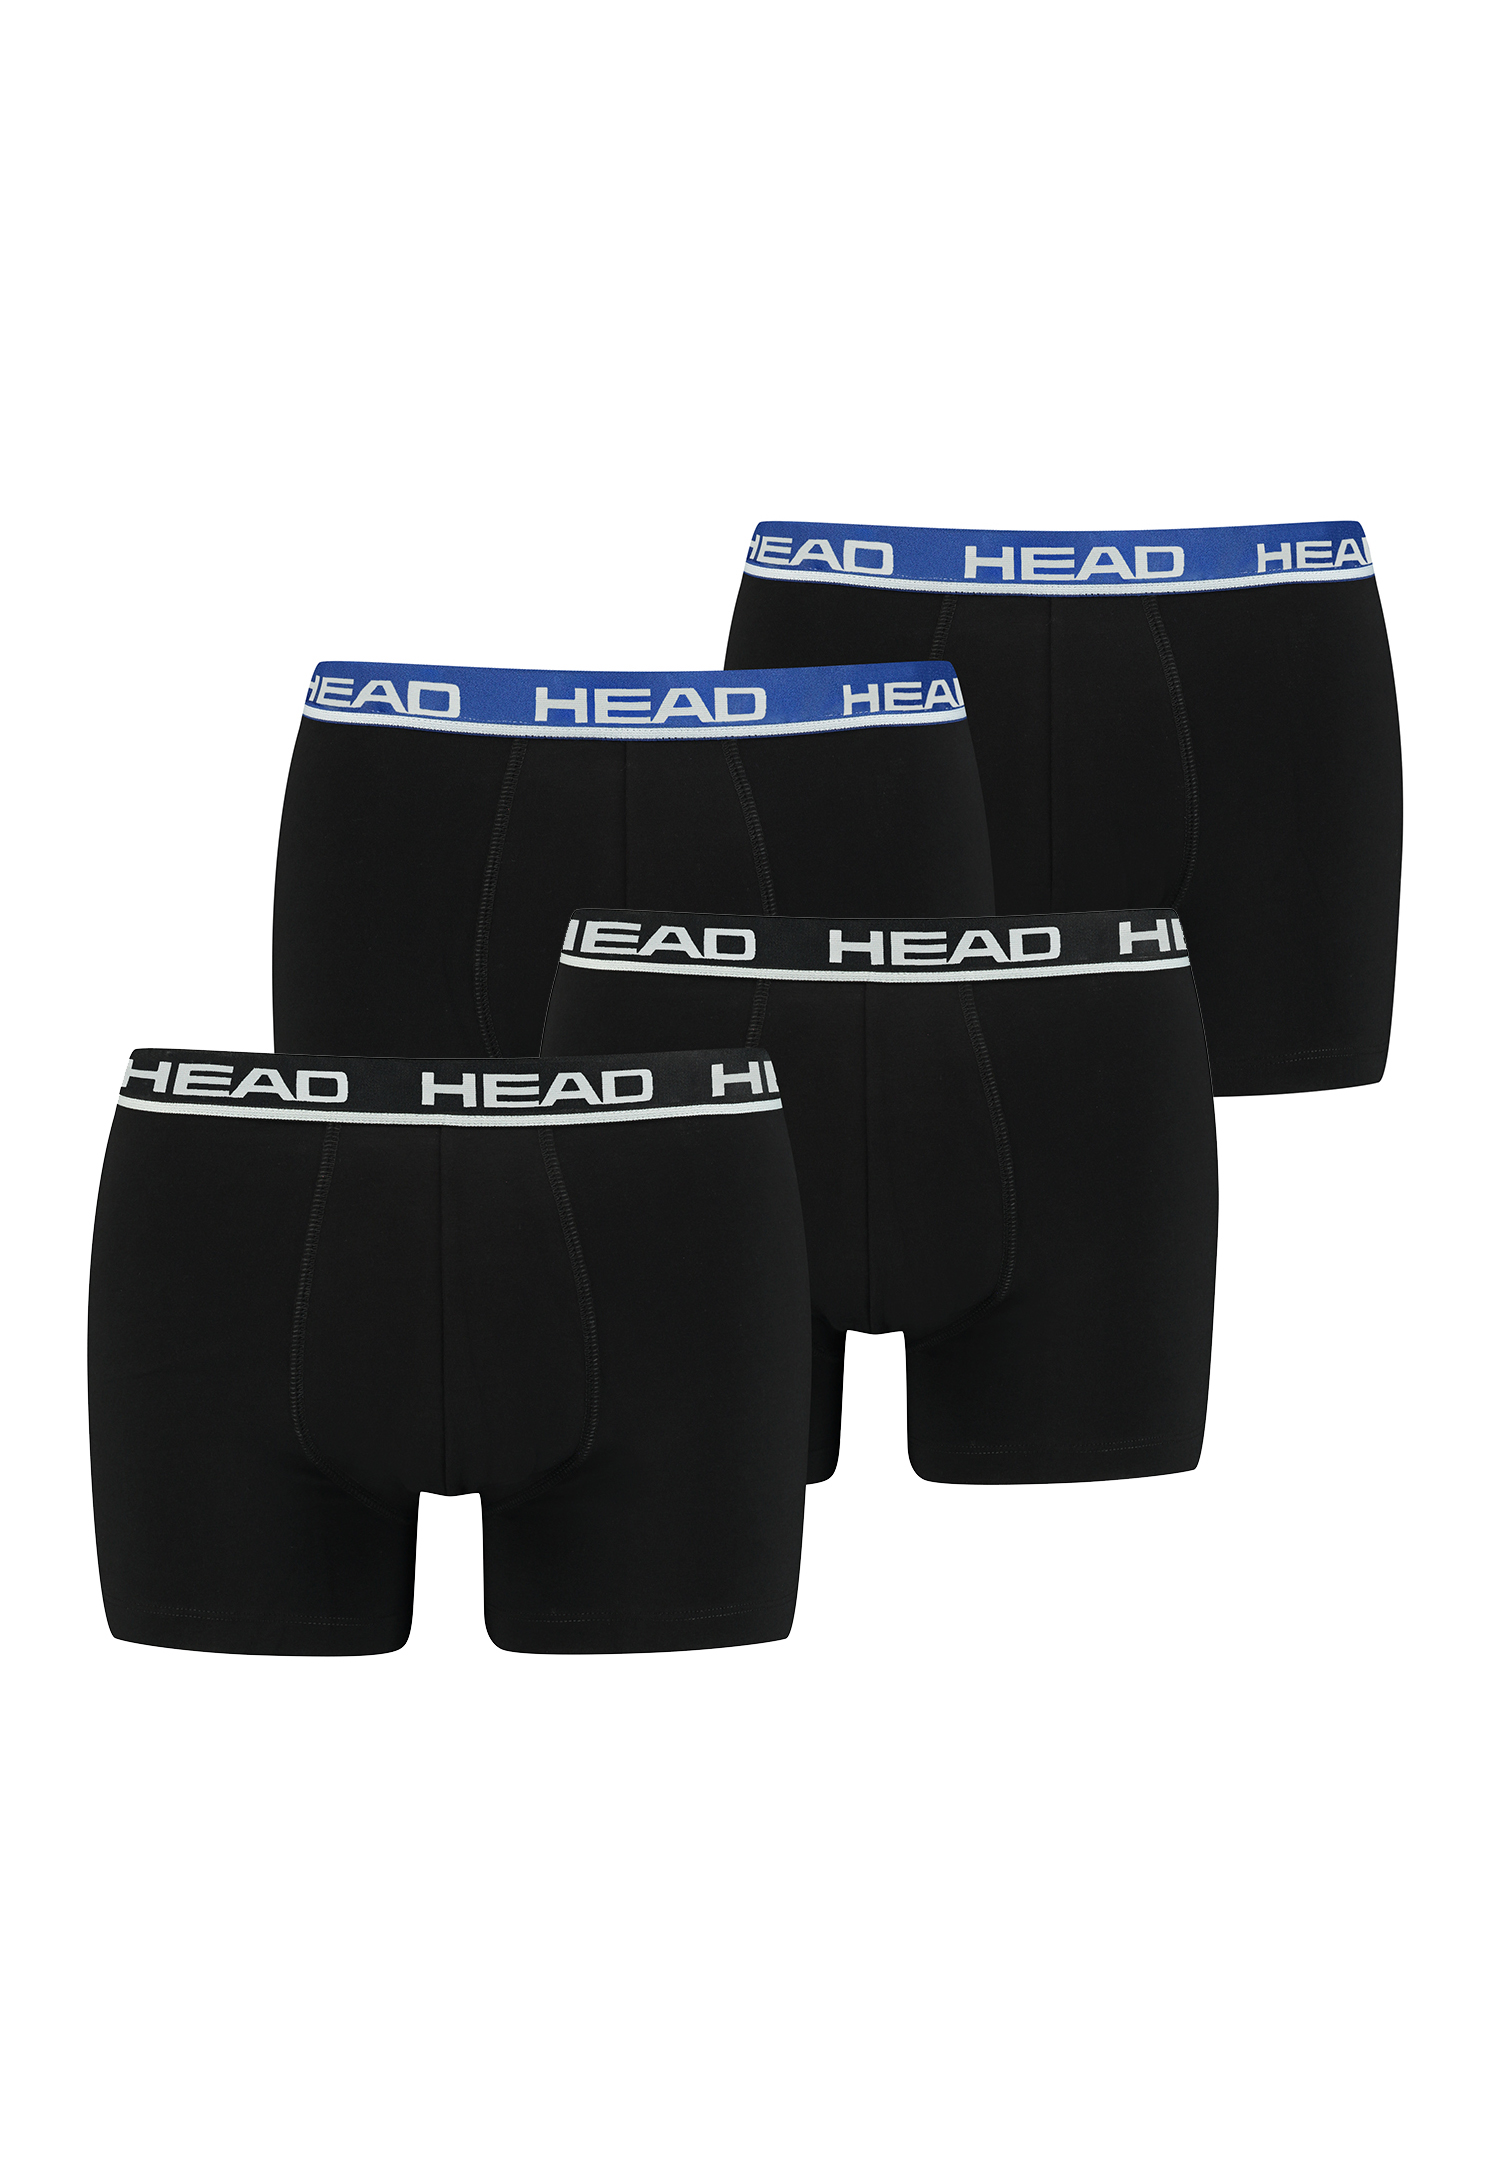 Head Herren Basic Boxer Pant Shorts Unterwäsche Unterhose 4 er Pack von HEAD